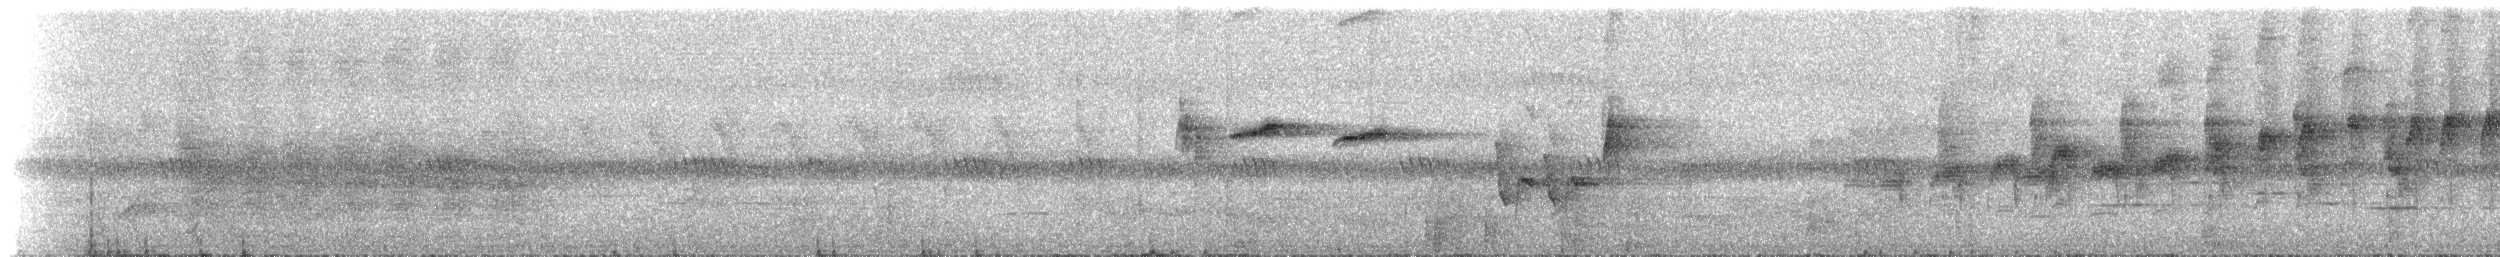 Ak Karınlı Tepeli Sinekkapan (albiventris) - ML534816